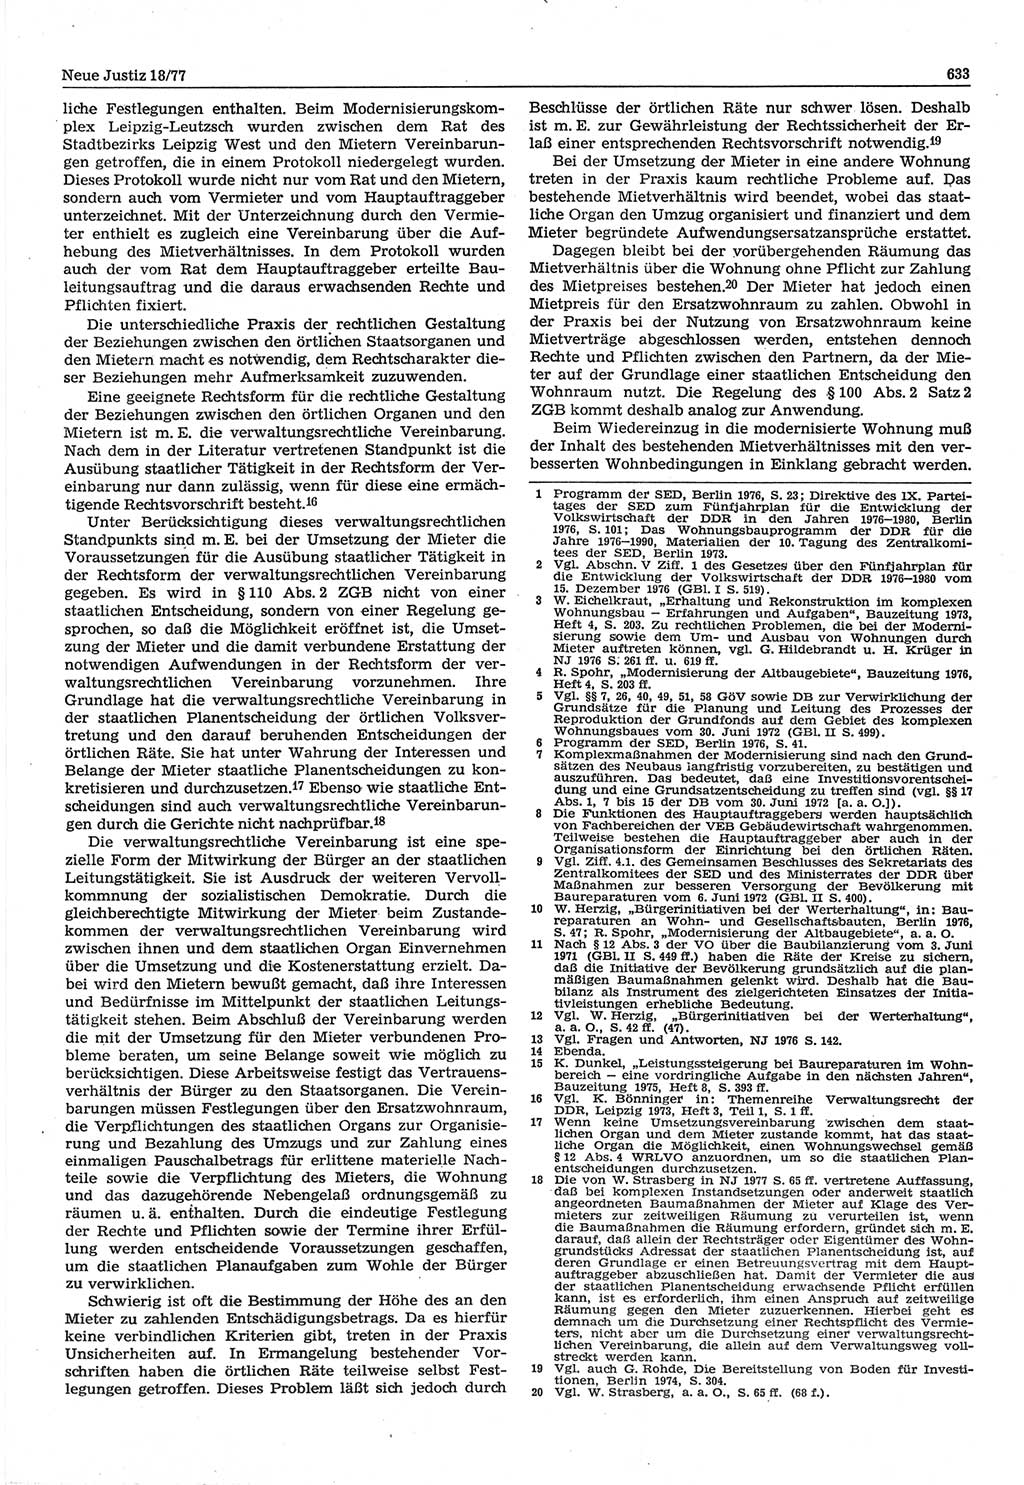 Neue Justiz (NJ), Zeitschrift für Recht und Rechtswissenschaft-Zeitschrift, sozialistisches Recht und Gesetzlichkeit, 31. Jahrgang 1977, Seite 633 (NJ DDR 1977, S. 633)